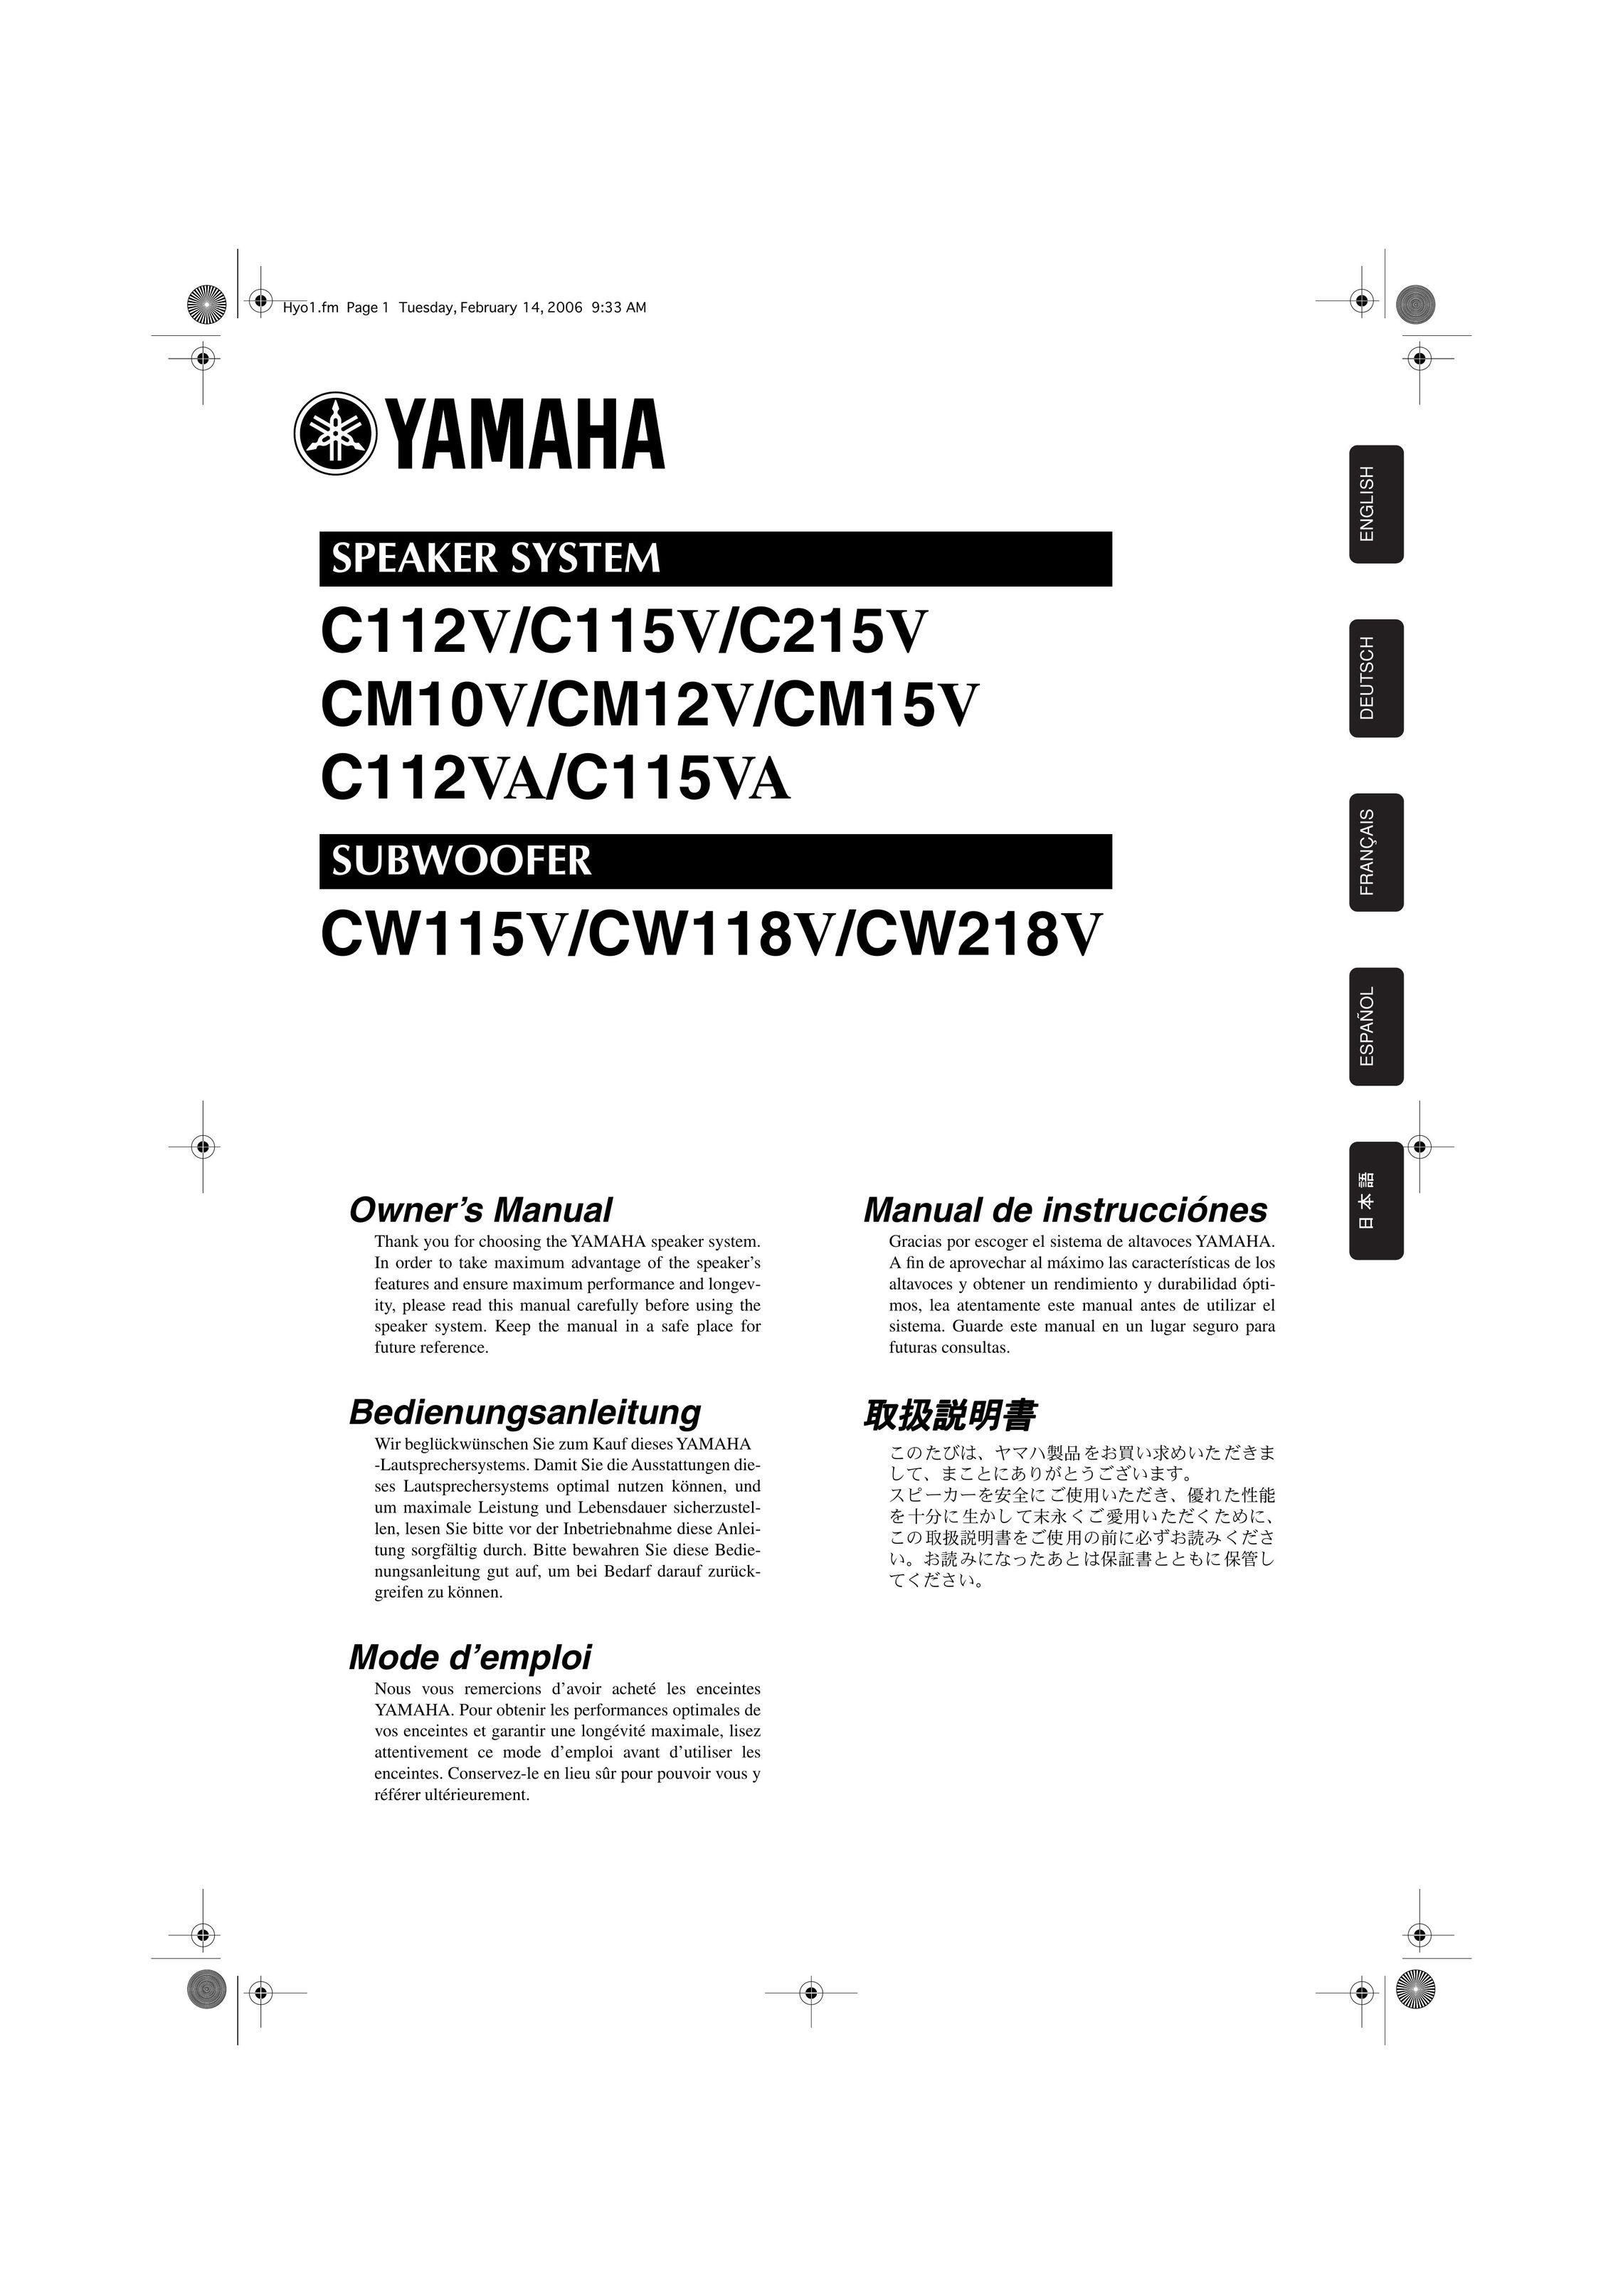 Yamaha CM15V Portable Speaker User Manual